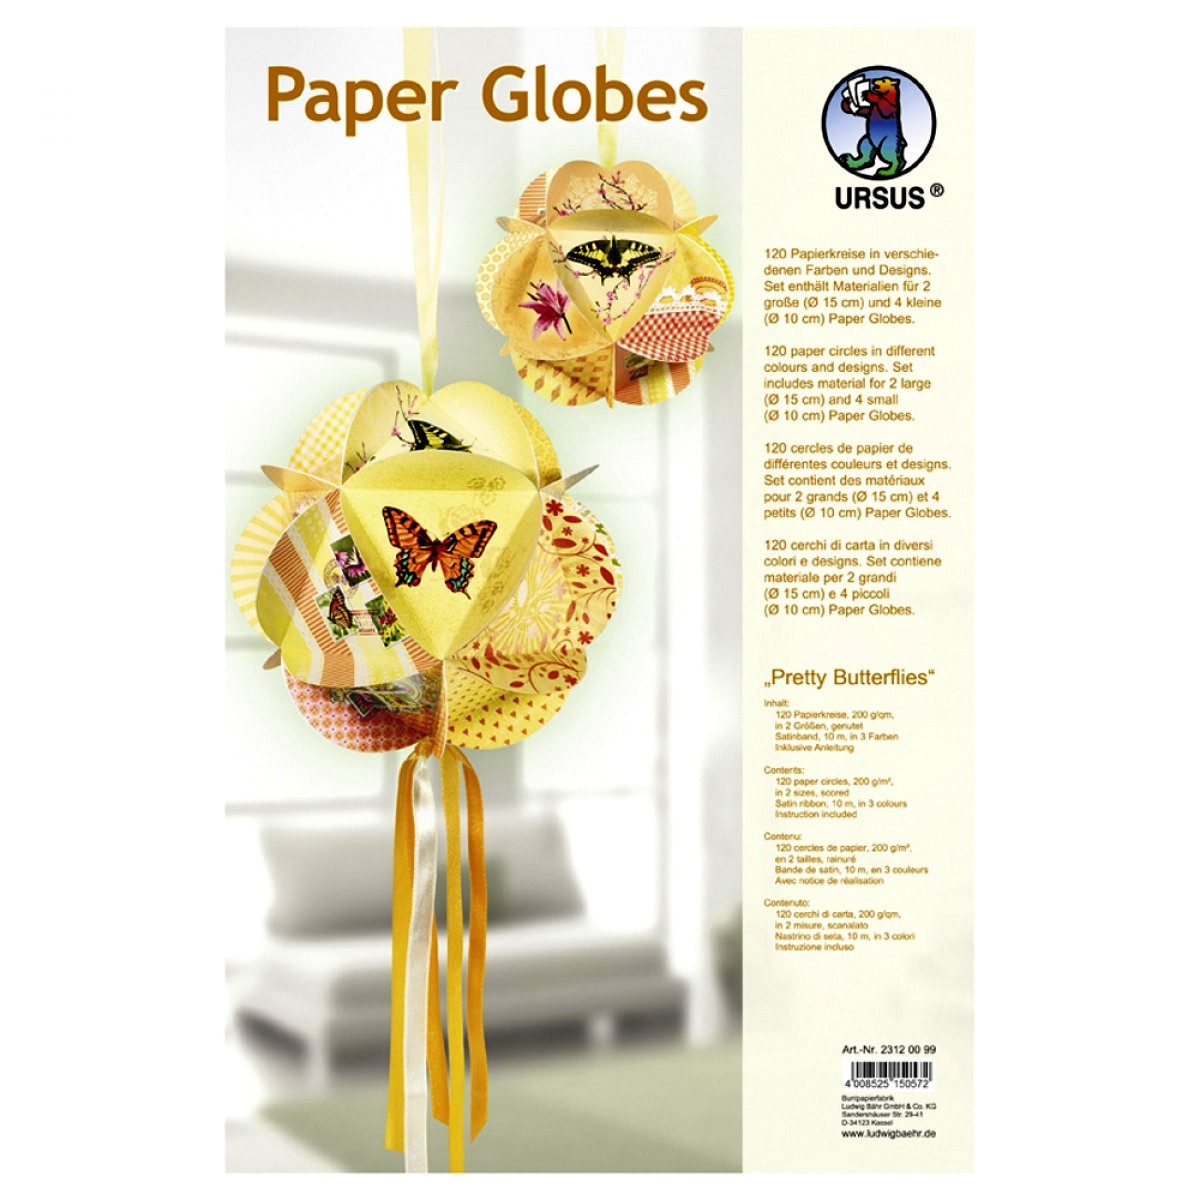 Papierkreise / Paper Globes "Pretty Butterflies"